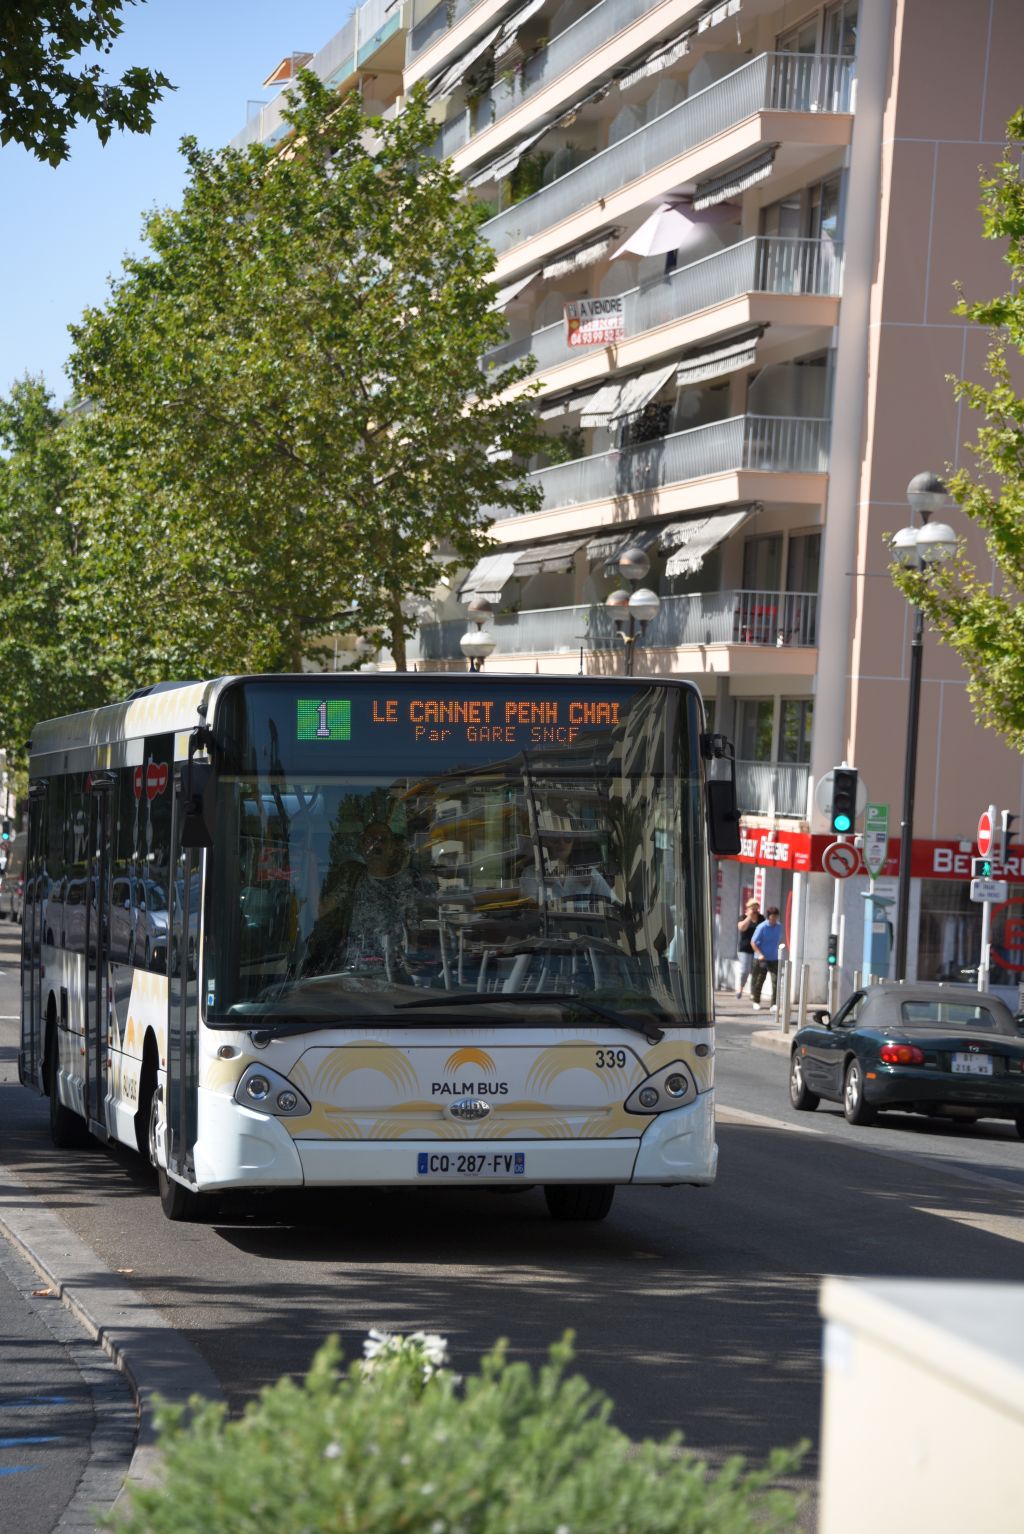 Palm Bus 339 Cannes